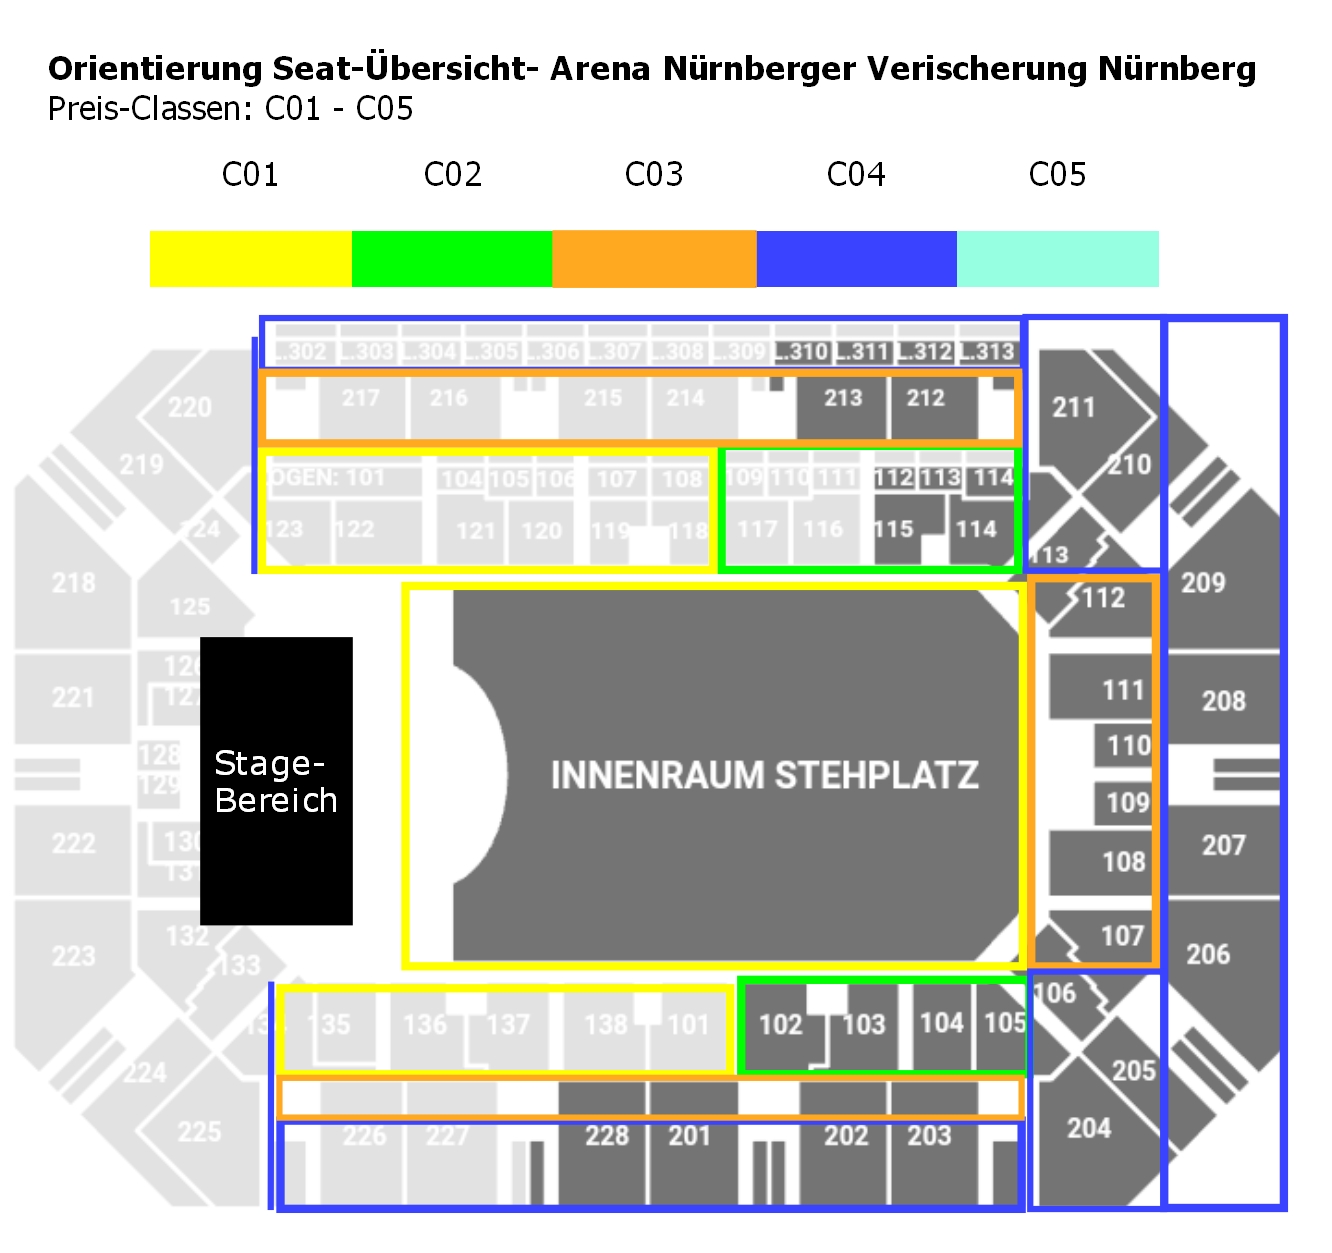 seats-arena-nuernbergerversicherung.jpg